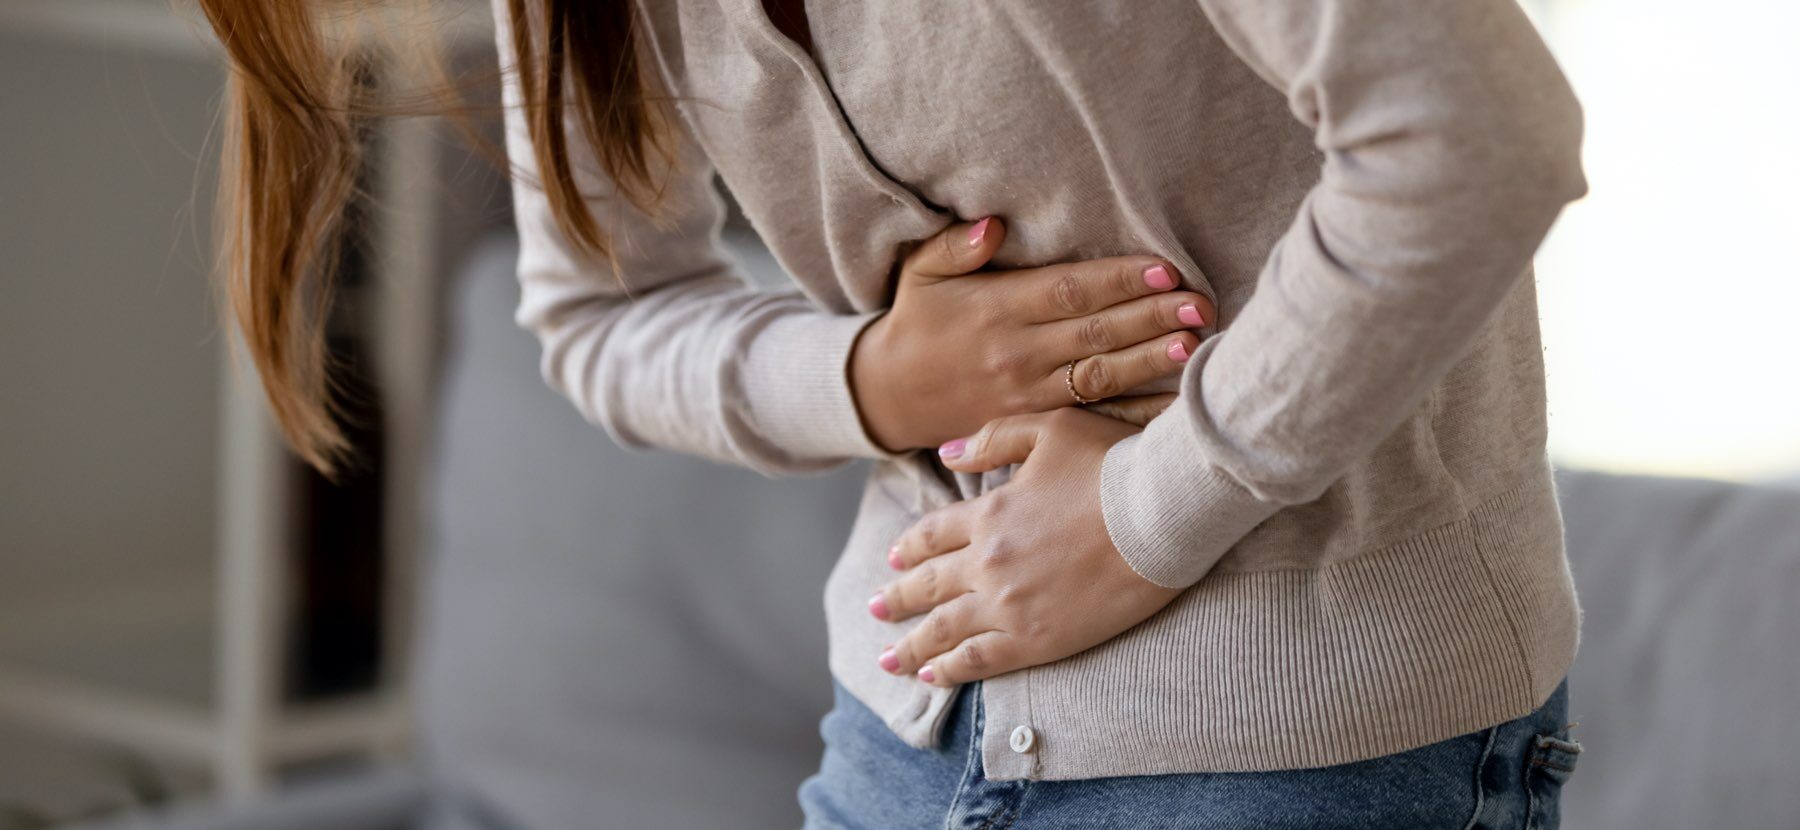 Nahrungsmittelunverträglichkeit: Frau fasst sich vor Schmerzen an den Bauch